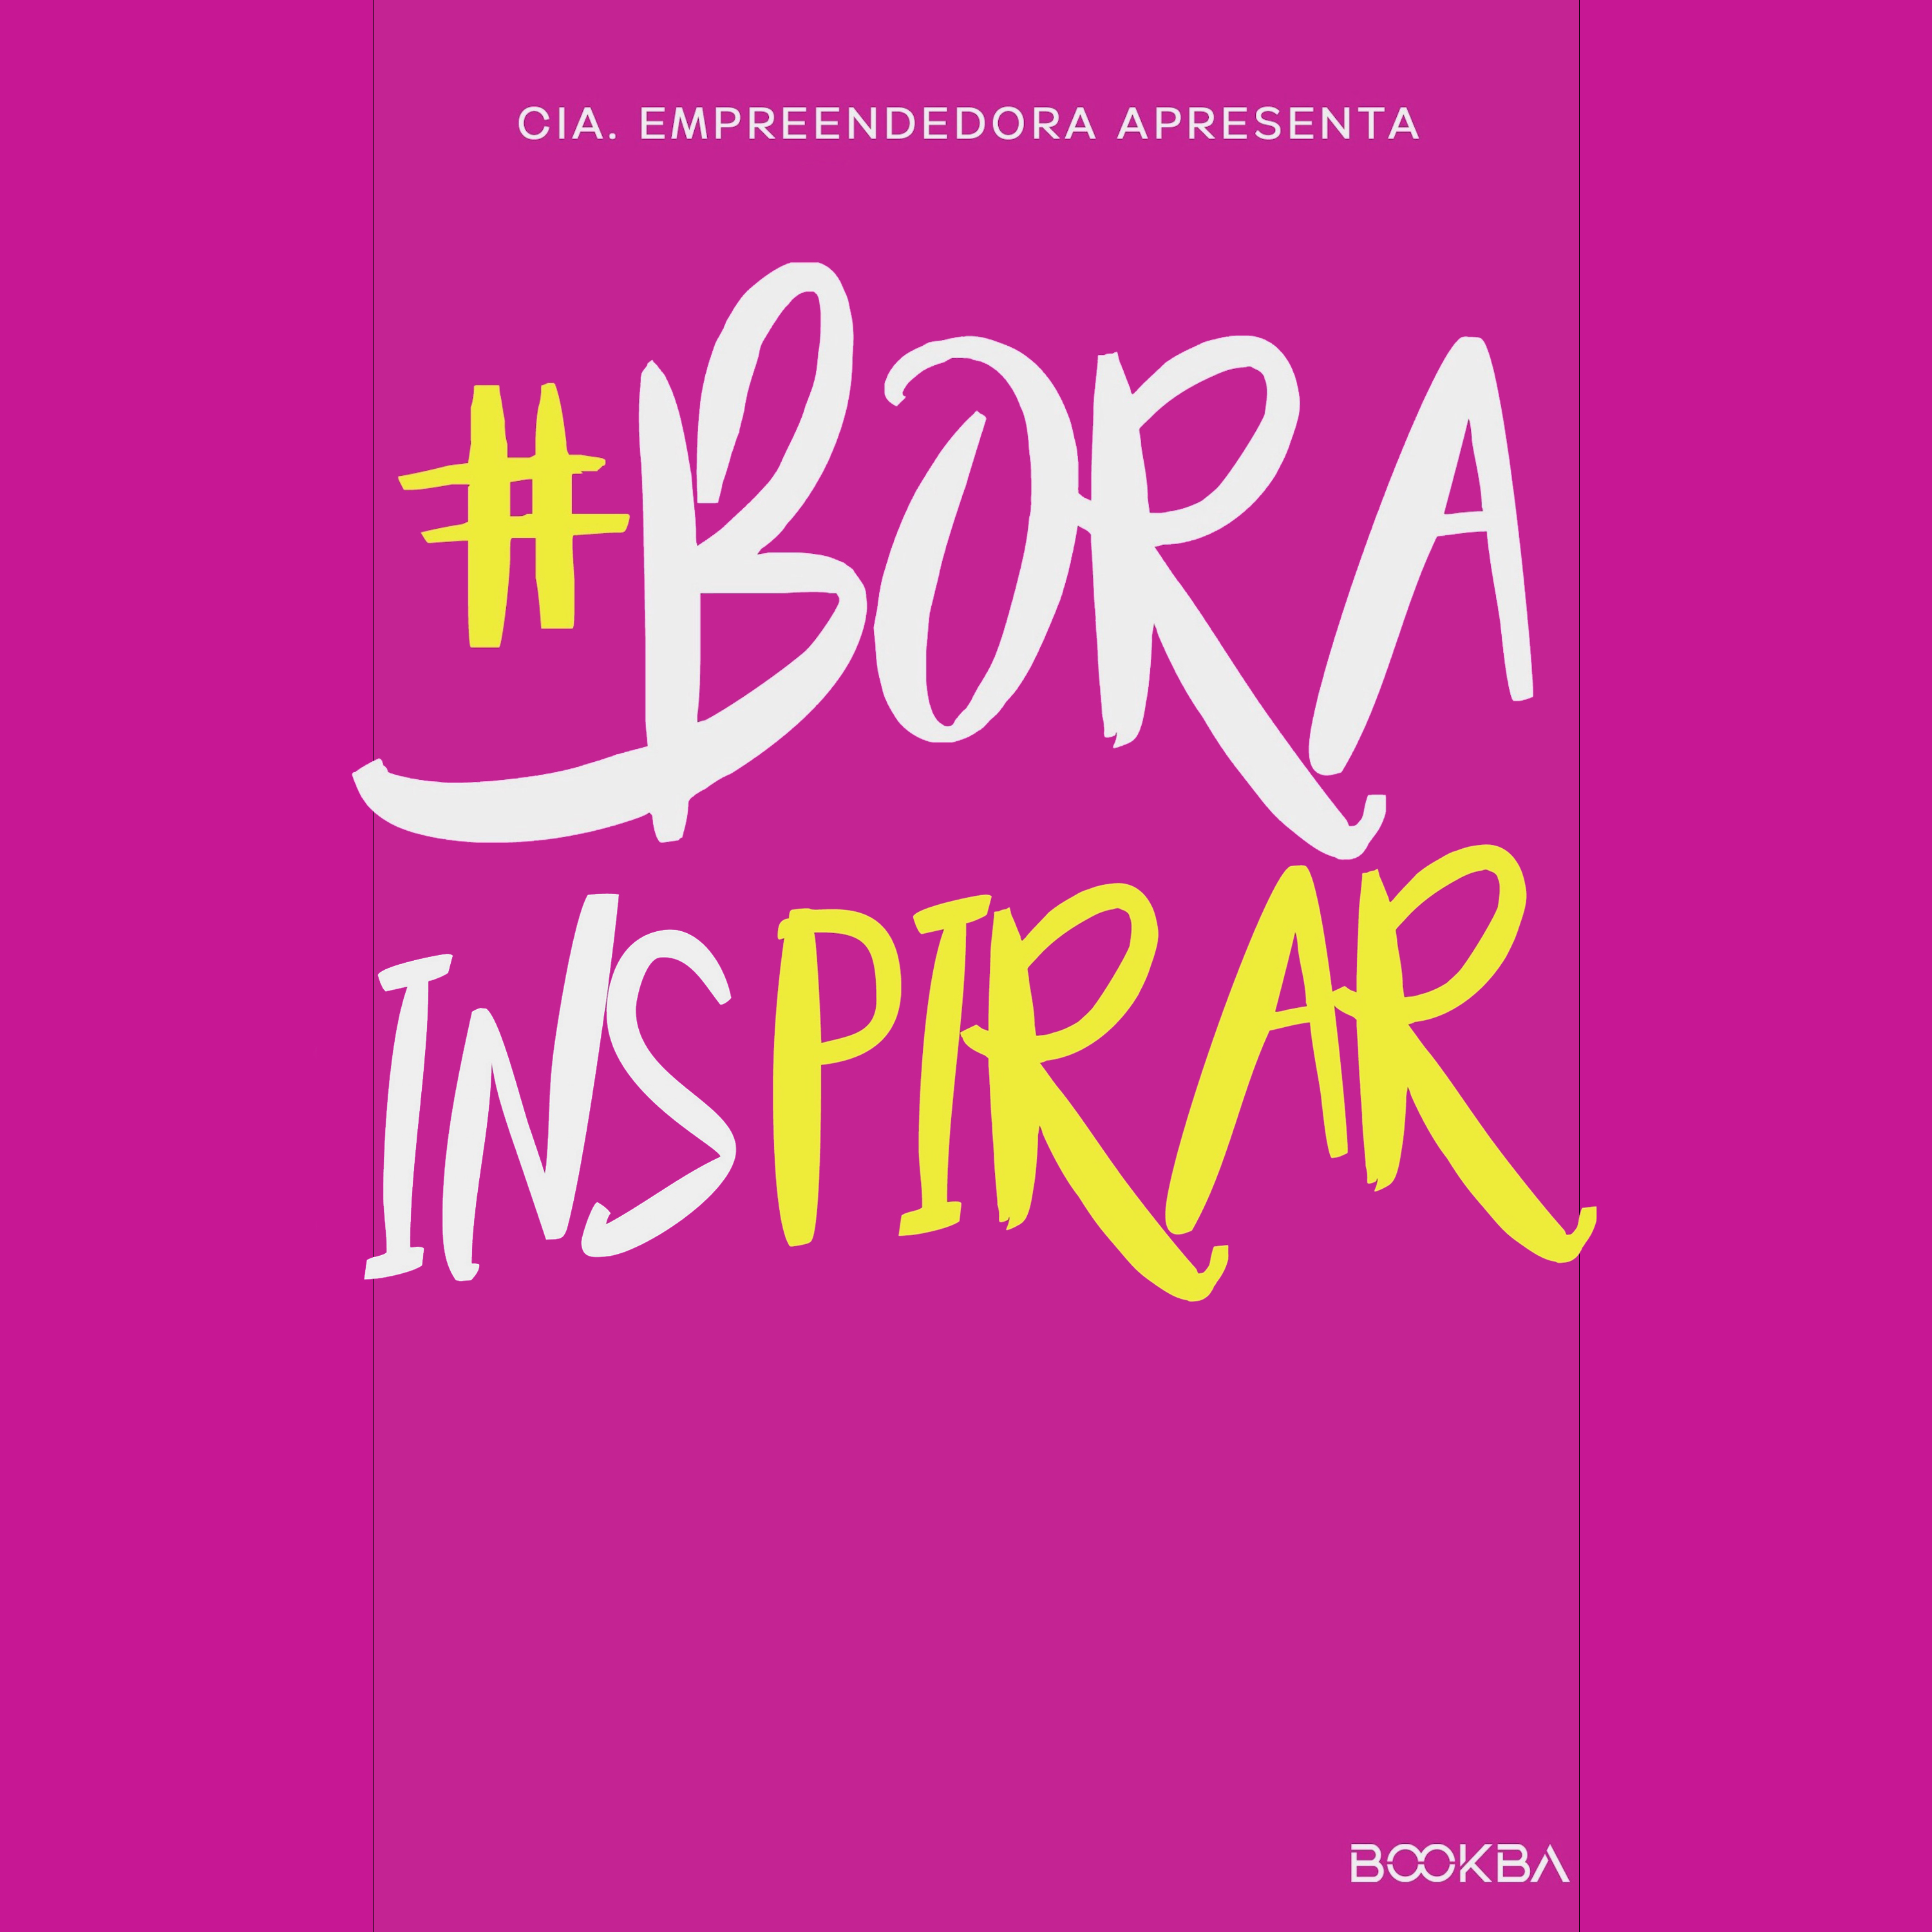 #Bora Inspirar